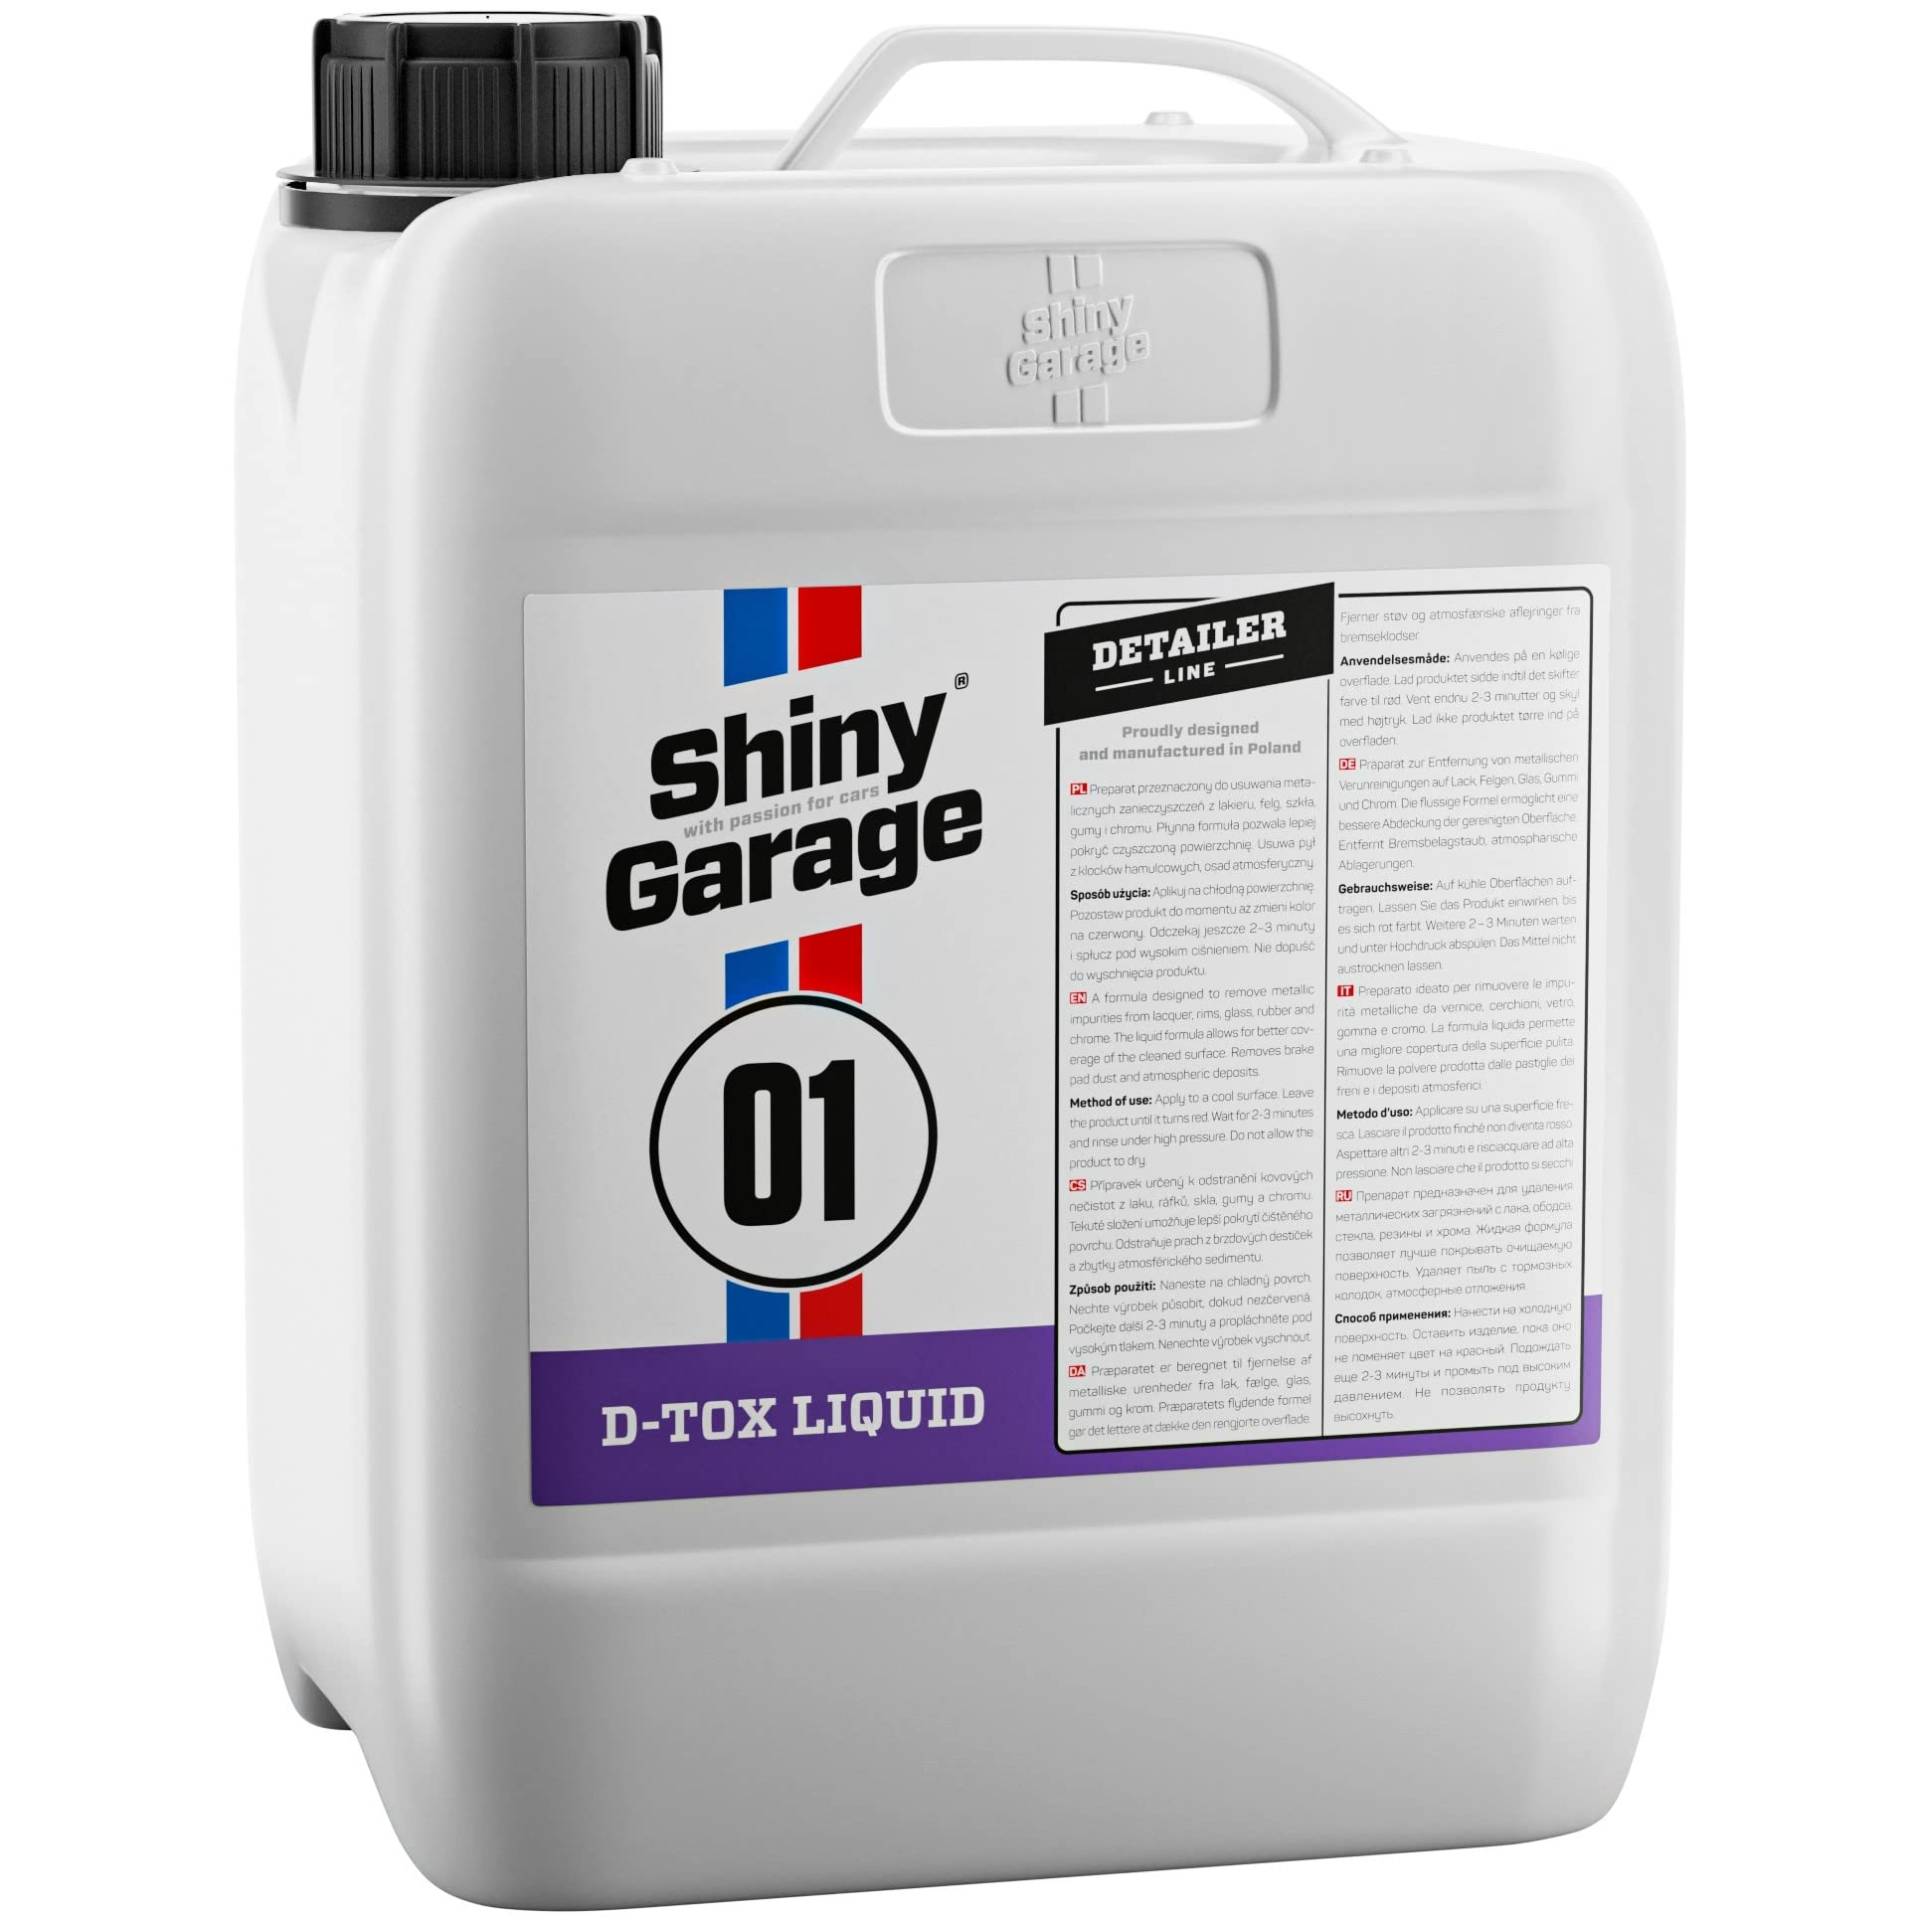 Shiny Garage Flugrostentferner Auto “D-Tox Liquid” 5 Liter - Für leichte Verschmutzungen - Rostentferner Auto - Rost Entfernen - Felgenpflege - Flugrost Entferner Für Auto von Shiny Garage